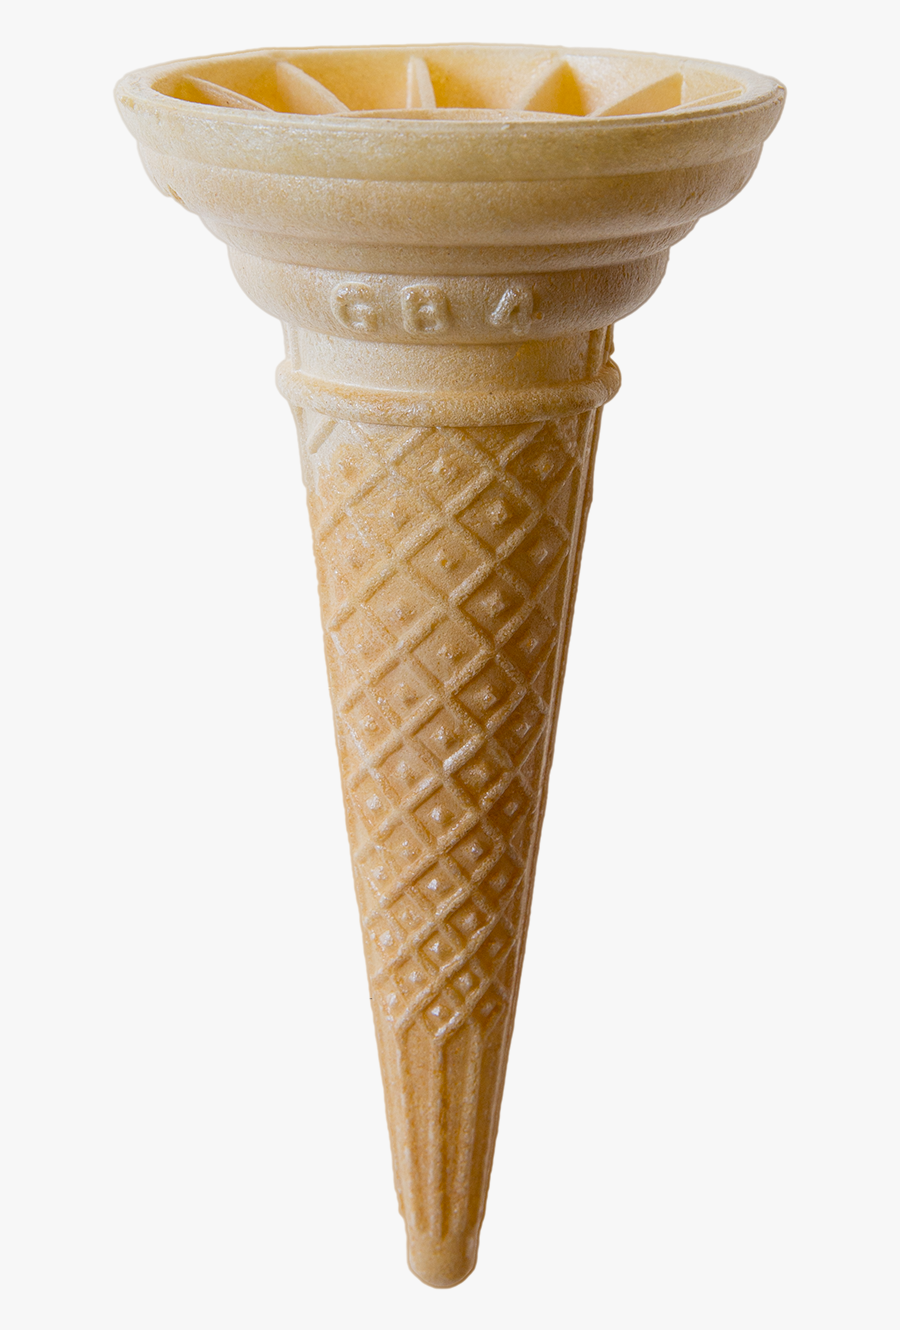 Transparent Ice Cream Cone Clipart Black And White - Ice Cream Wafer Cone Png, Transparent Clipart